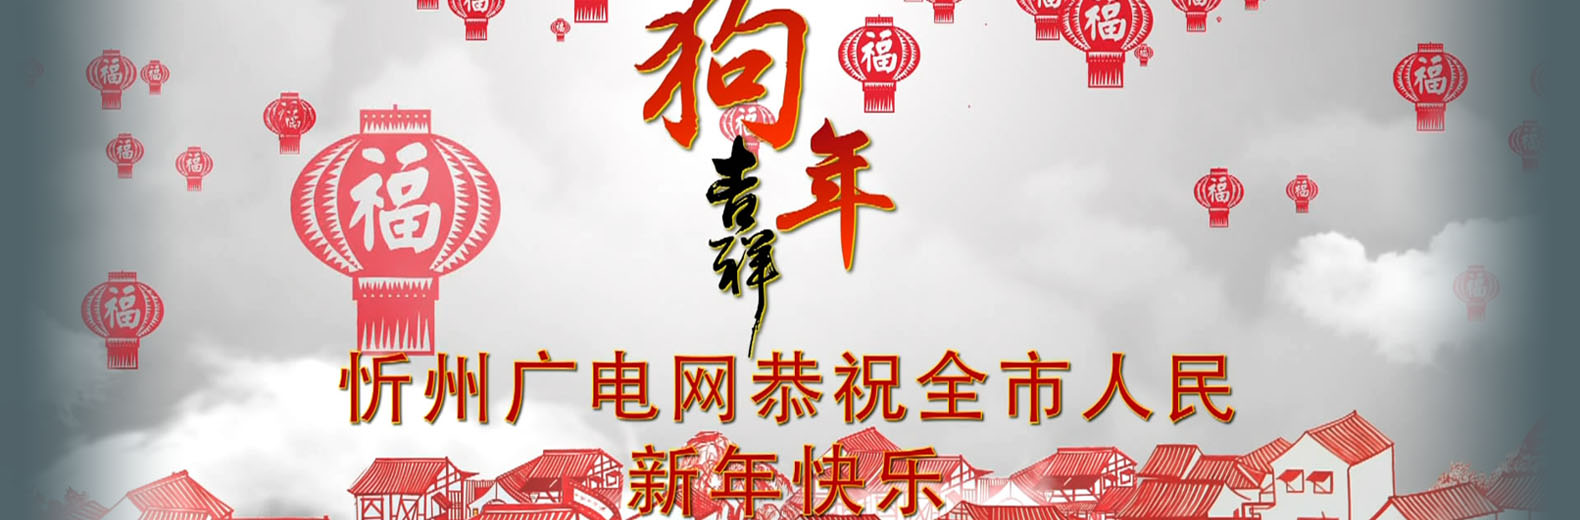 忻州广电网恭祝全市人民新年快乐